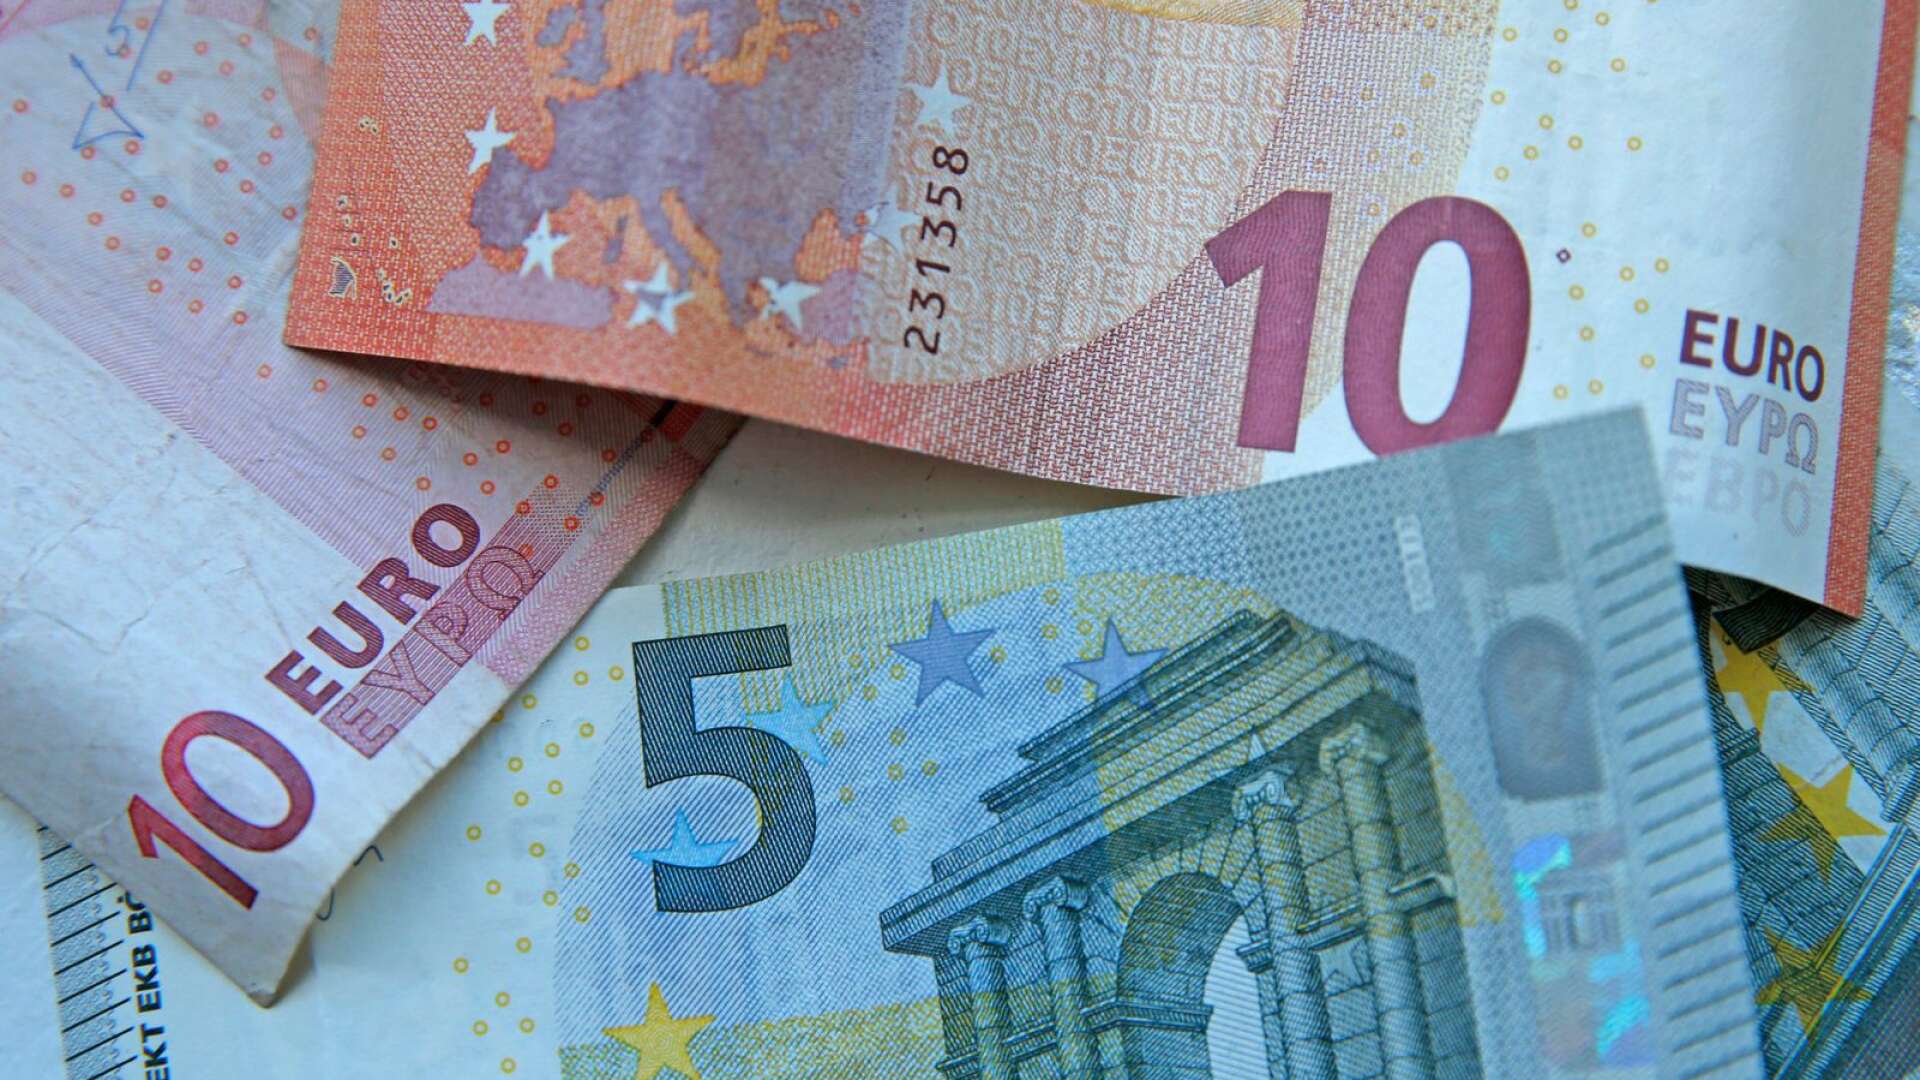 Genom en gemensam valuta fördjupas den integration som ytterst syftar till att omöjliggöra konflikter mellan Europas länder, skriver Anton Sjöstedt (L).